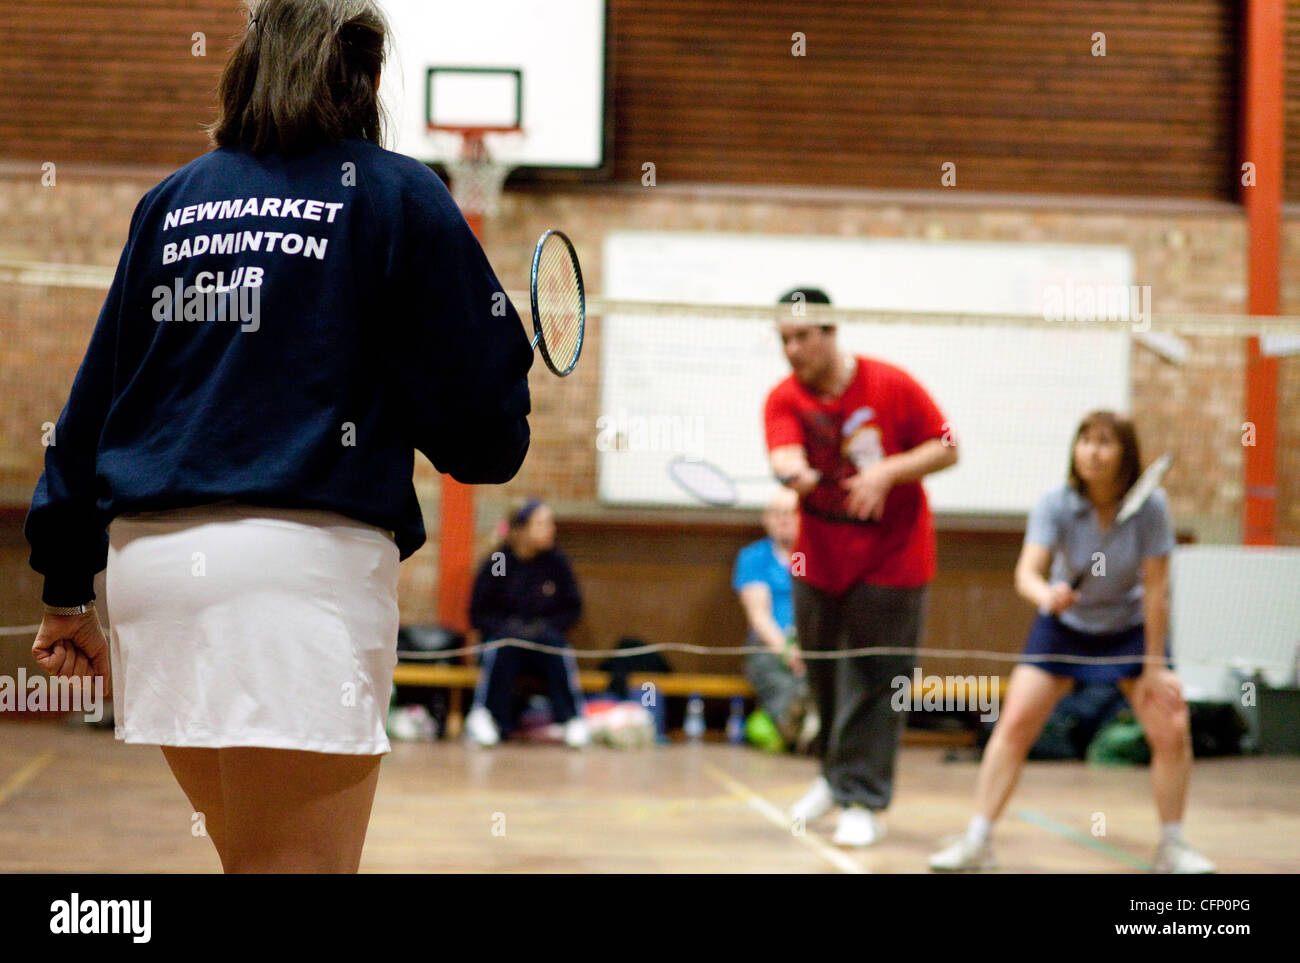 Les gens à jouer au badminton à leur club local, Newmarket Suffolk UK Banque D'Images